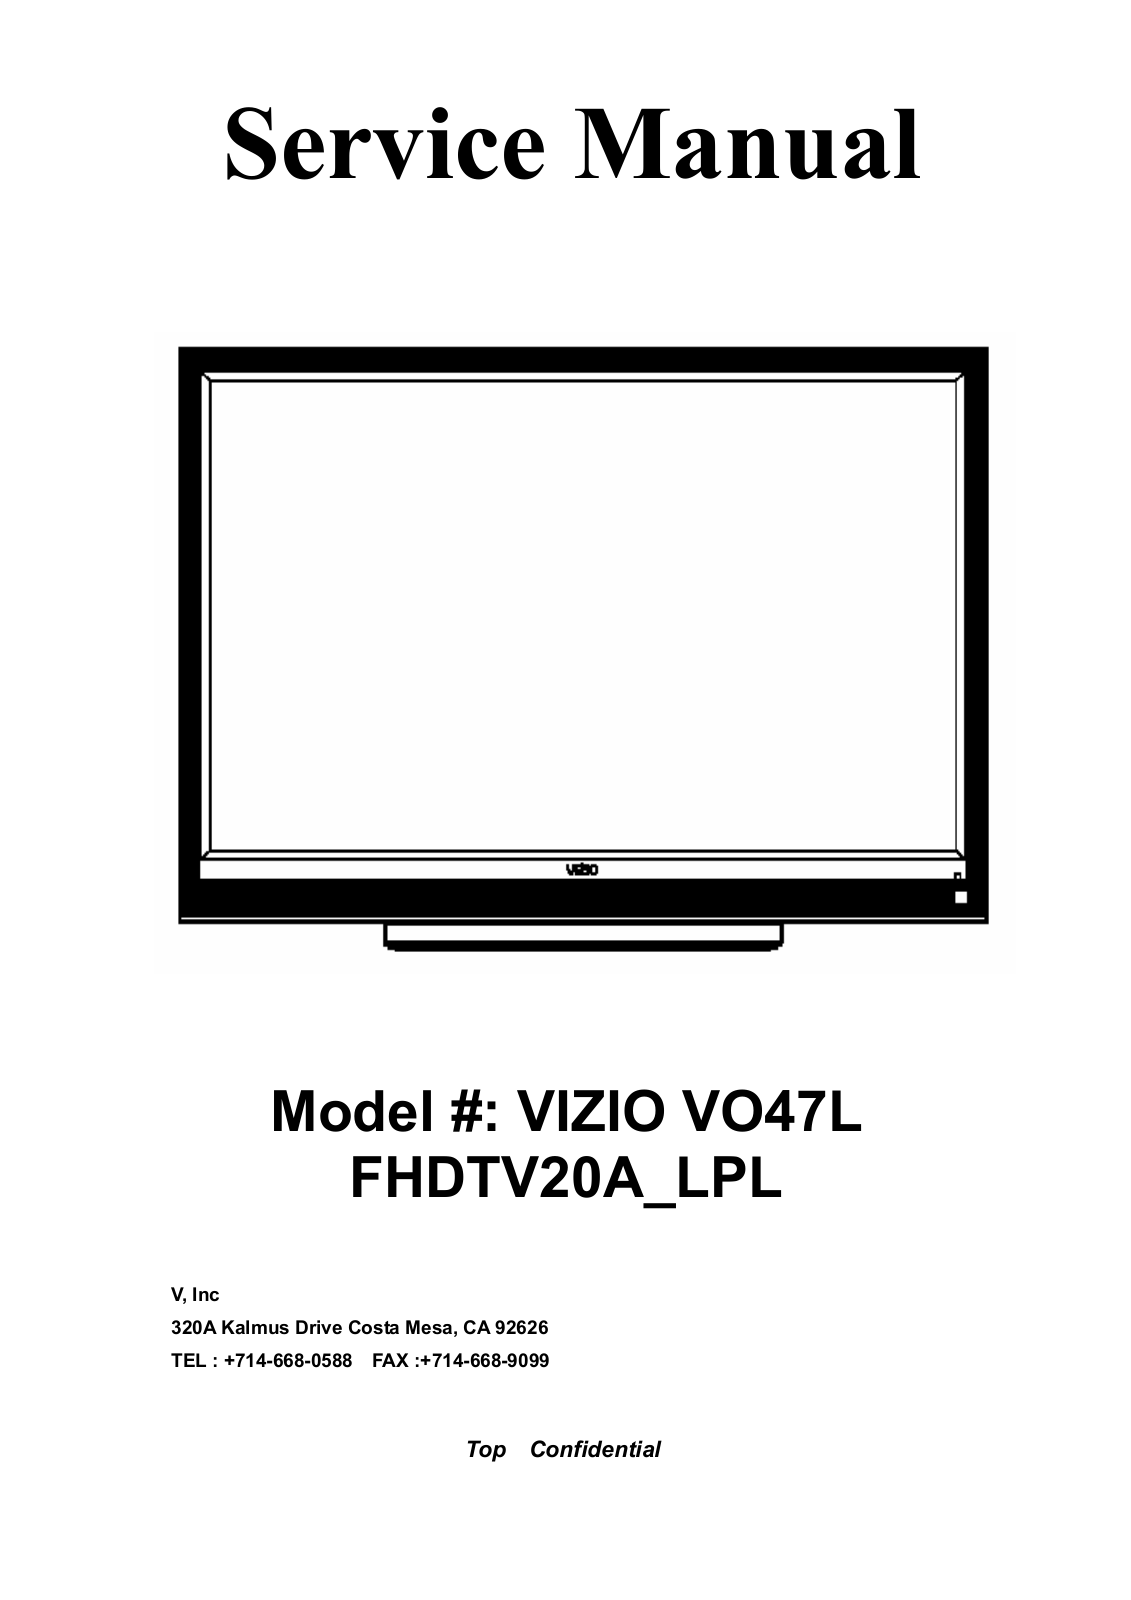 Vizio VO47LFHDTV20A Service Manual